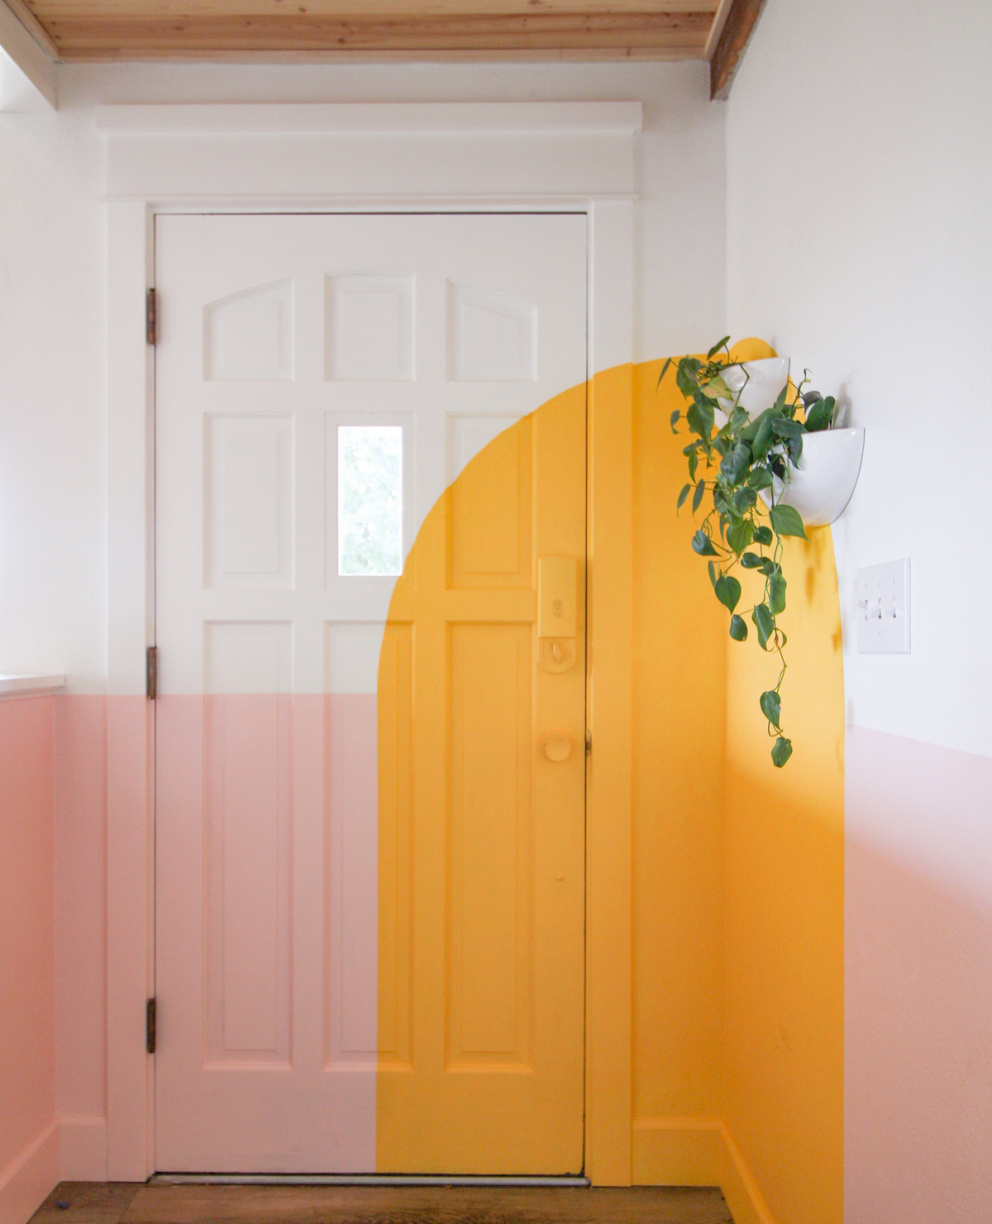 Barvy přechází ze zdí na dveře i nábytek.